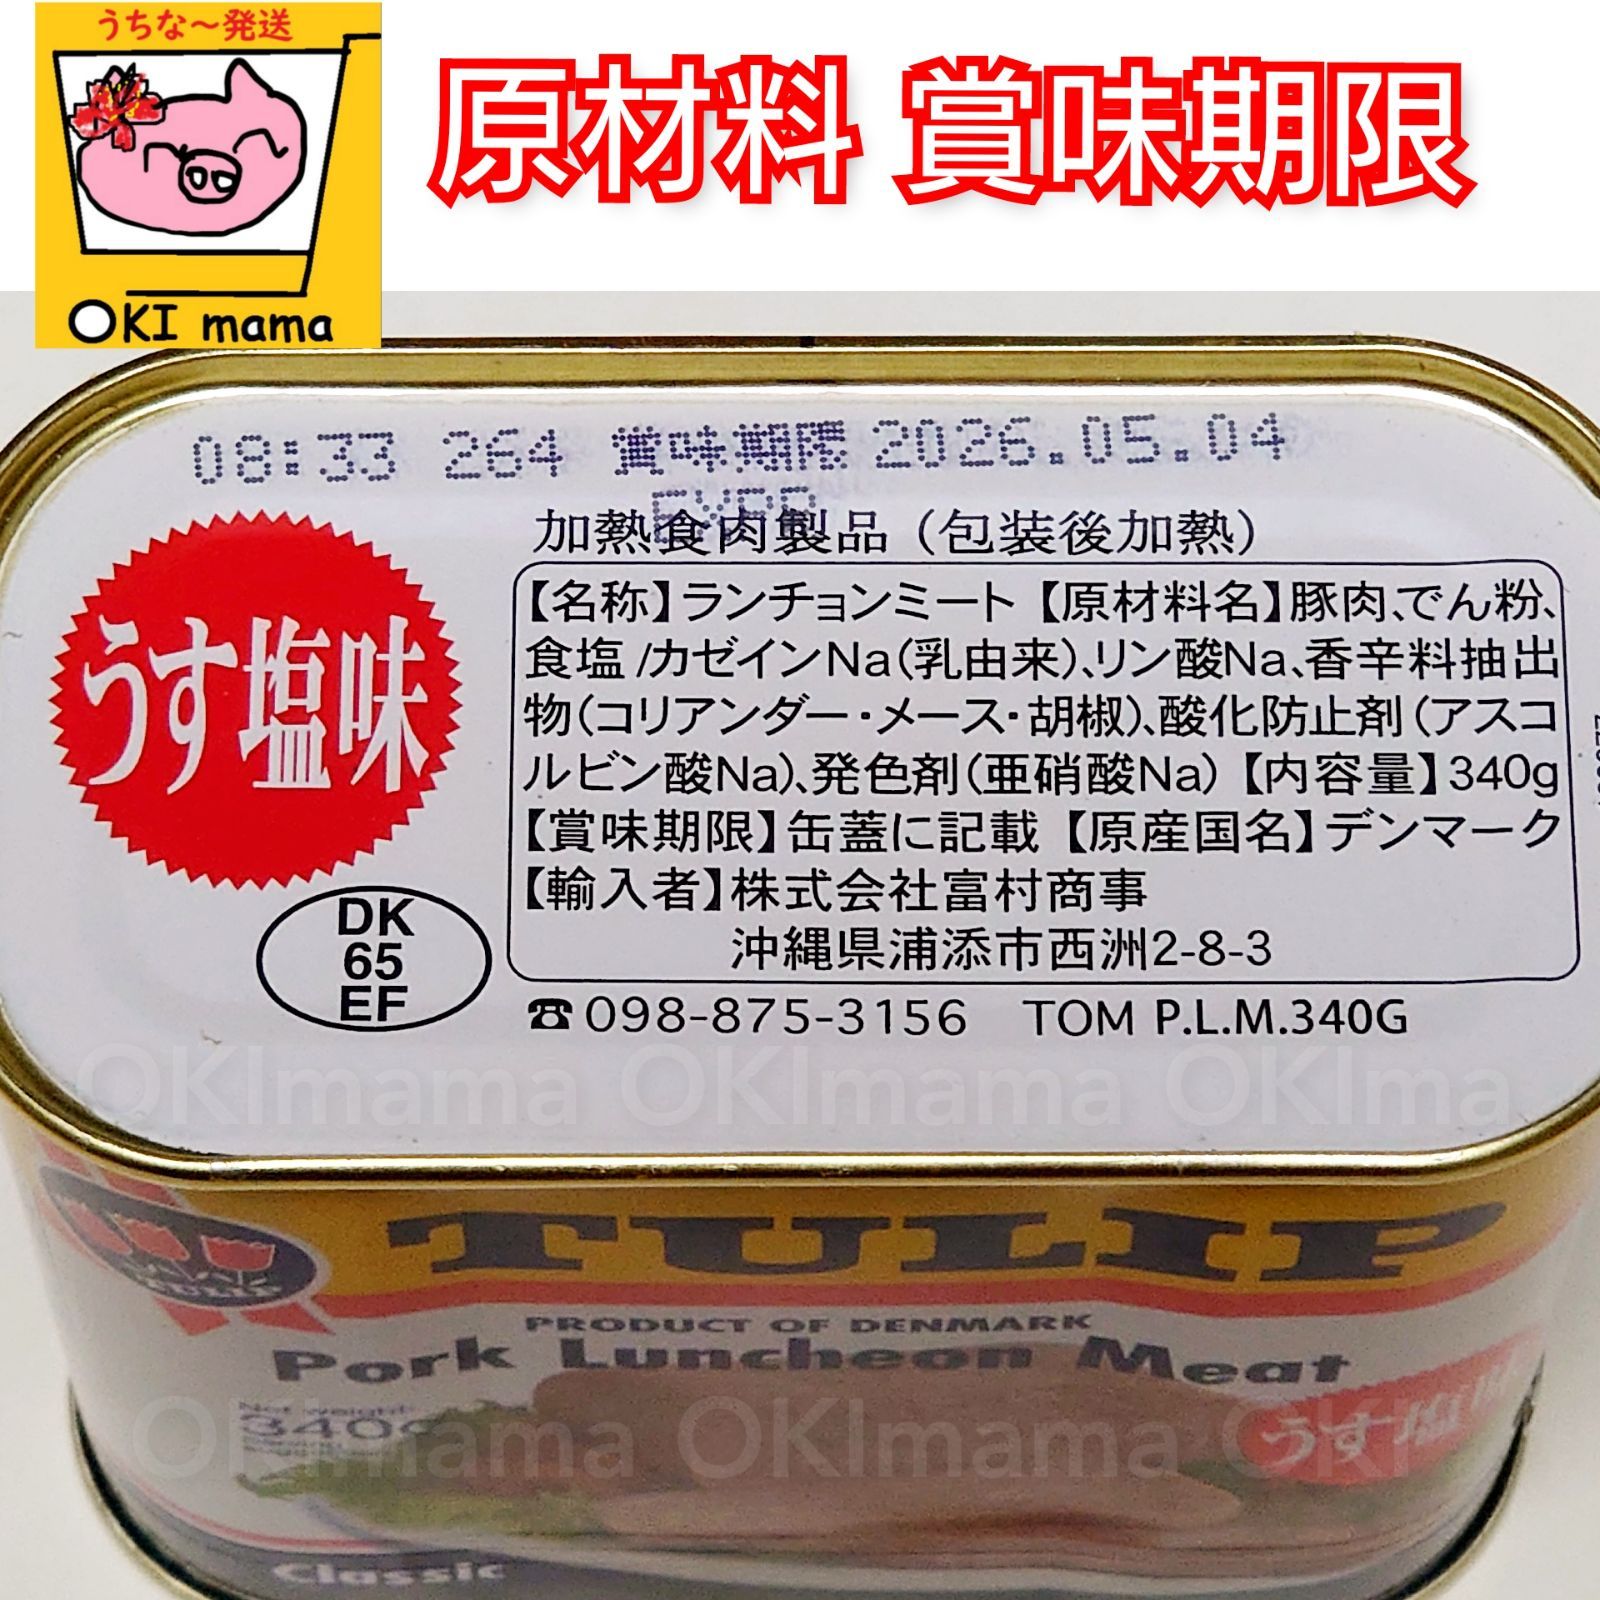 OKlmama✦✧✦めんそ〜れ〜✦✧✦　チューリップポーク　ランチョンミート　送料無料　4缶セット　メルカリ